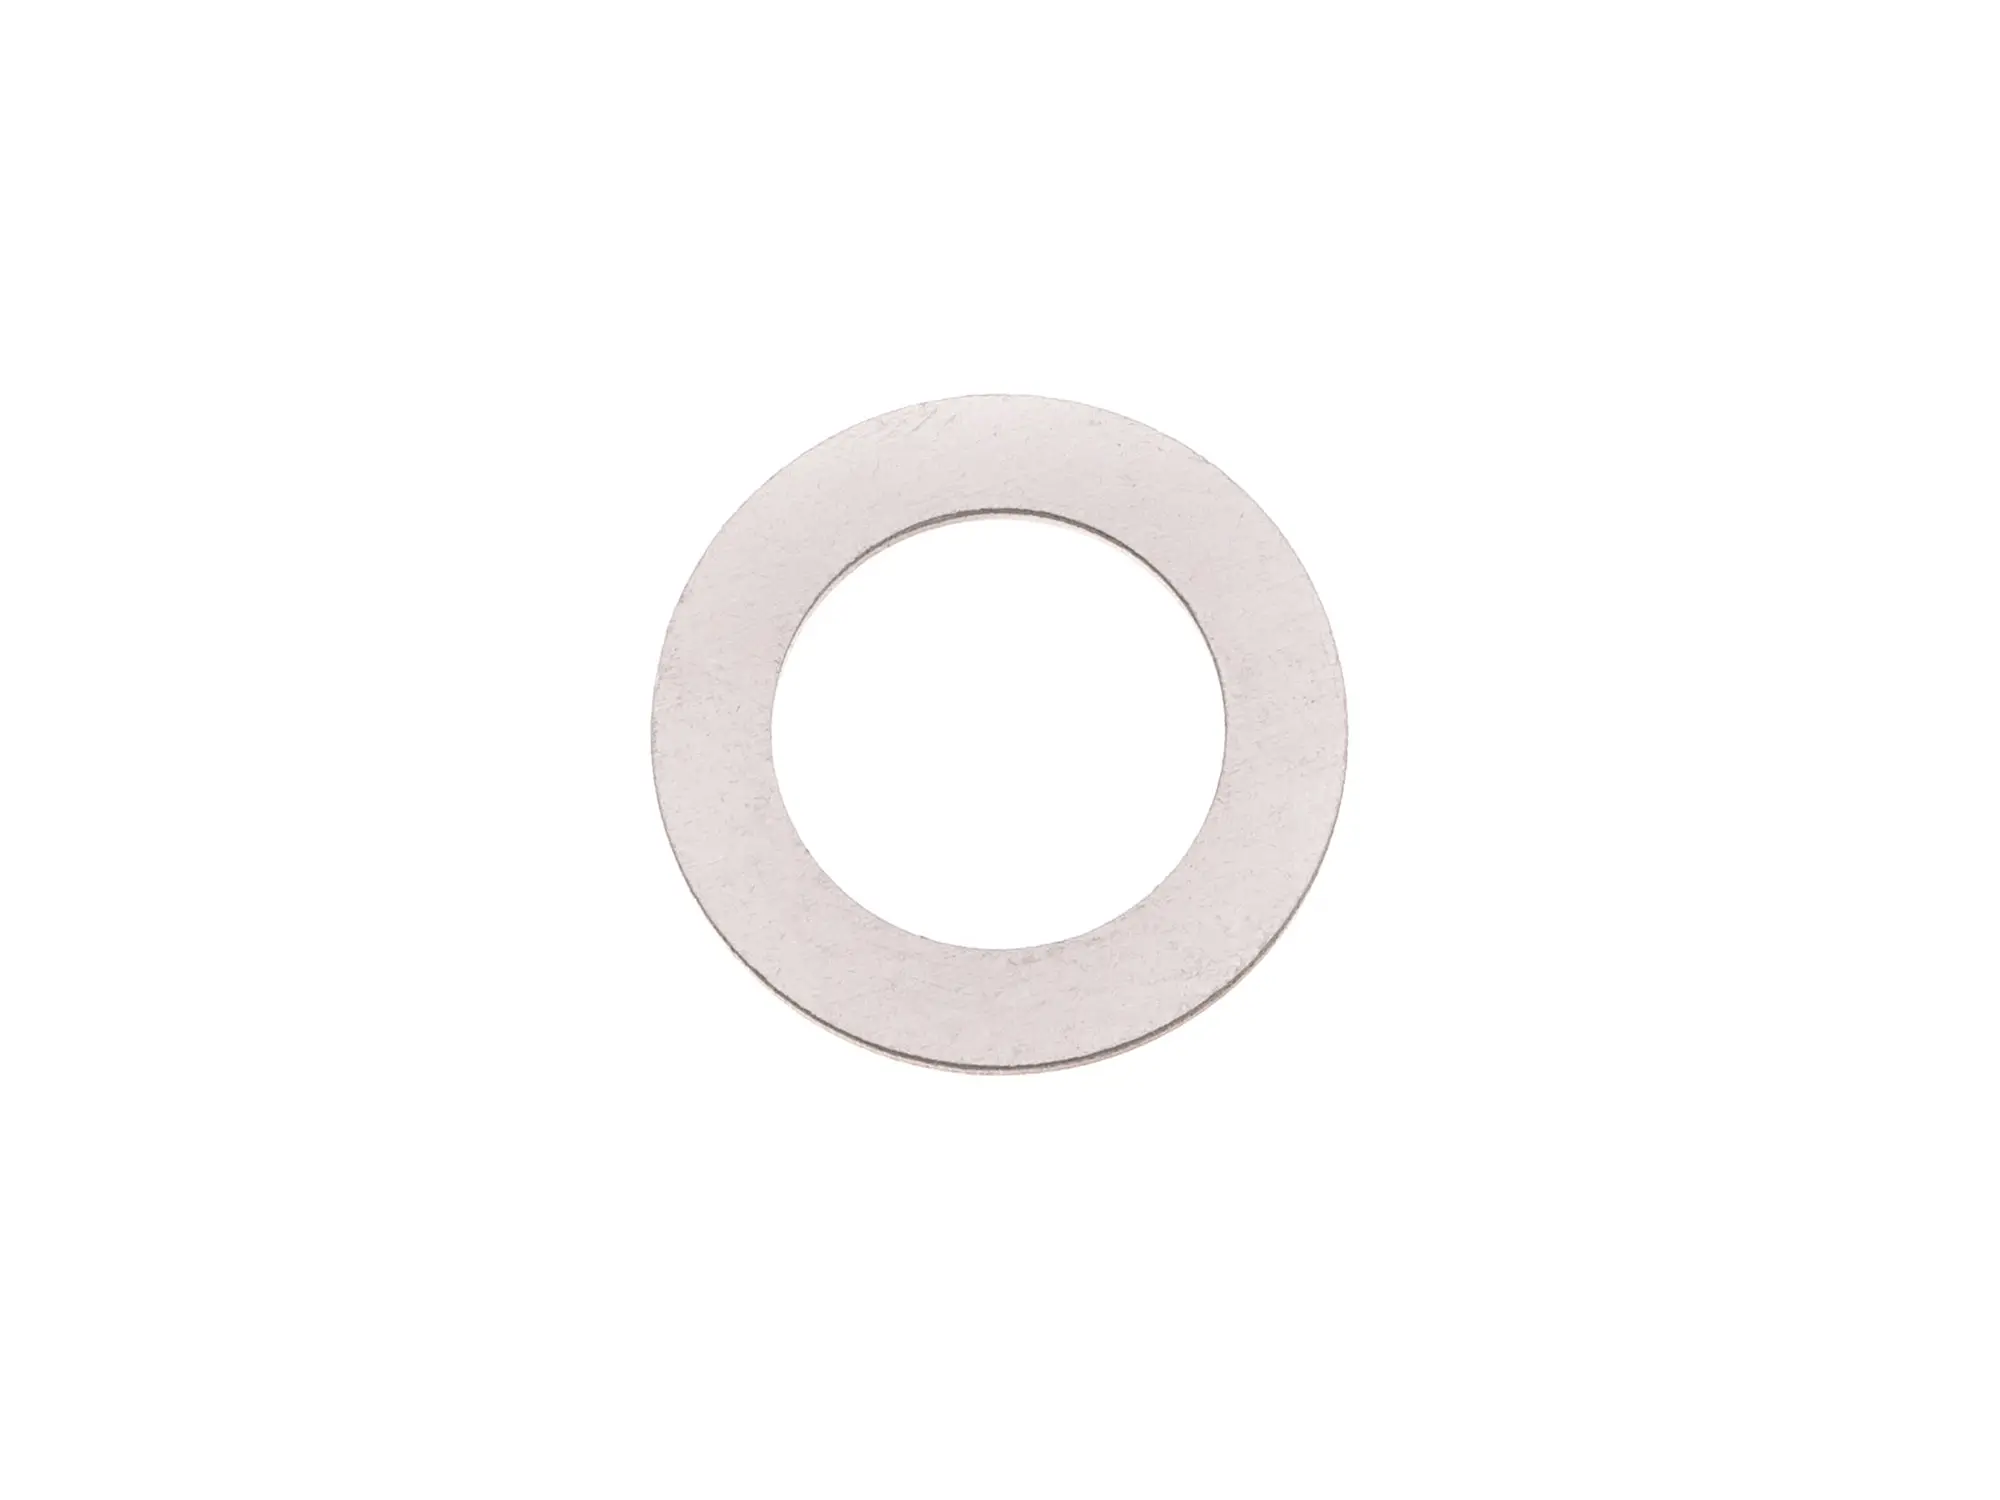 Sealing ring Ø10x16 for oil check screw, aluminium - for Simson S50, KR51/1 Schwalbe, SR4-2 Star, SR4-3 Sperber, SR4-4 Habicht - MZ, Item no: 10014423 - Image 1